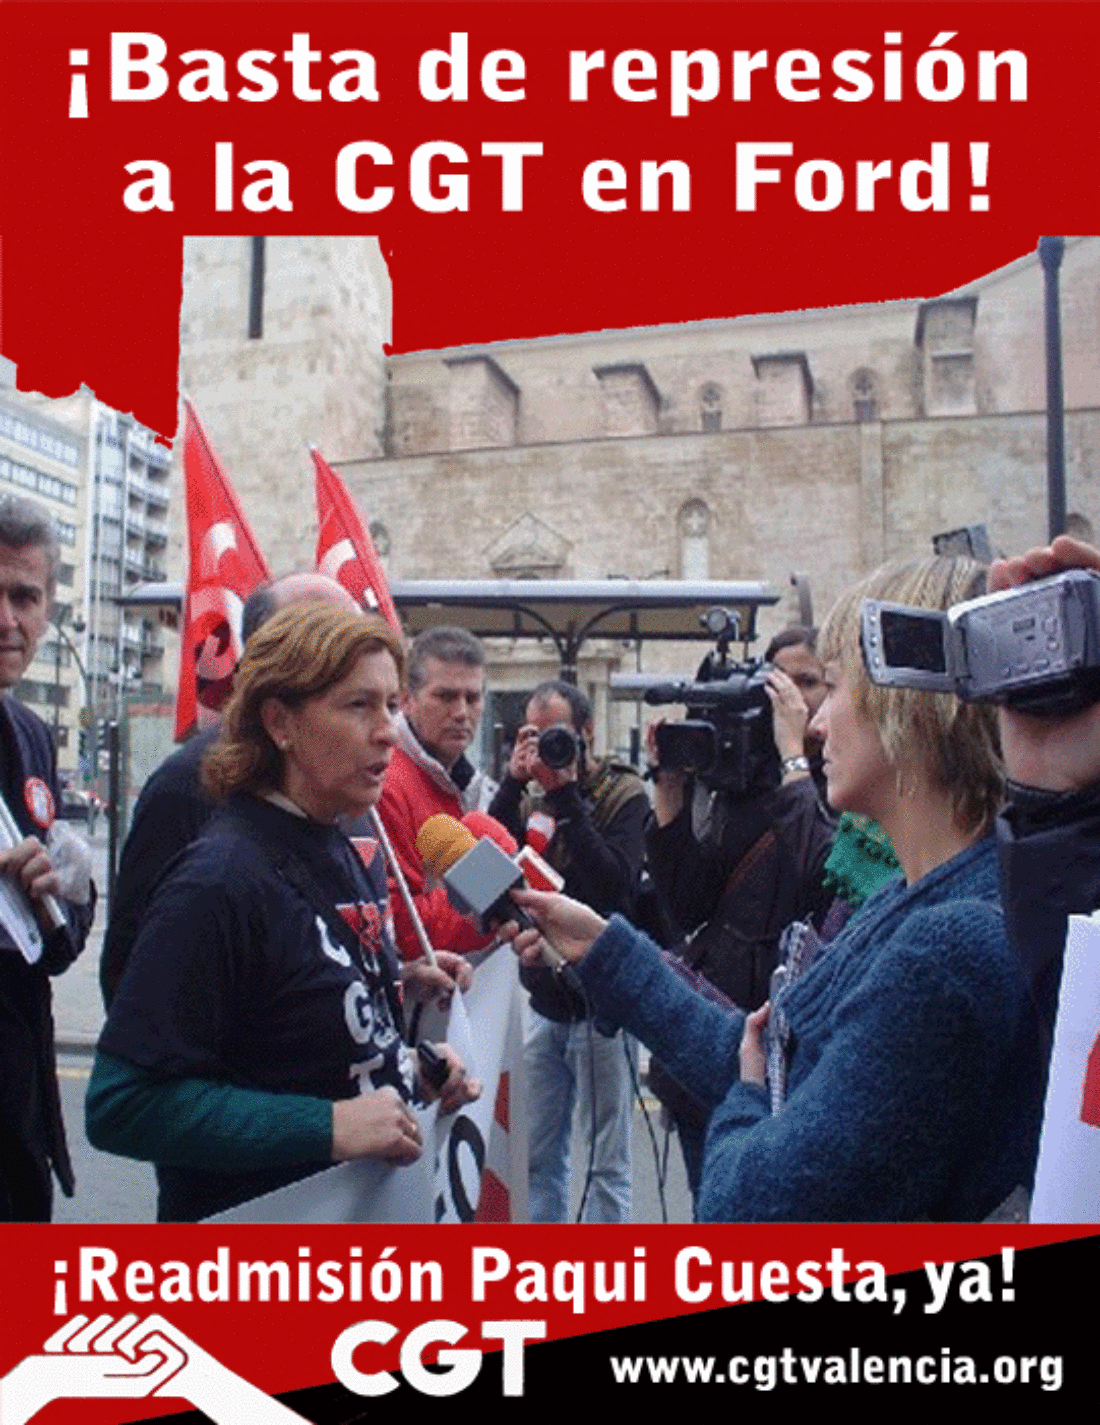 19 de Julio : Llamamiento a concentraciones de CGT ante concesionarios de Ford